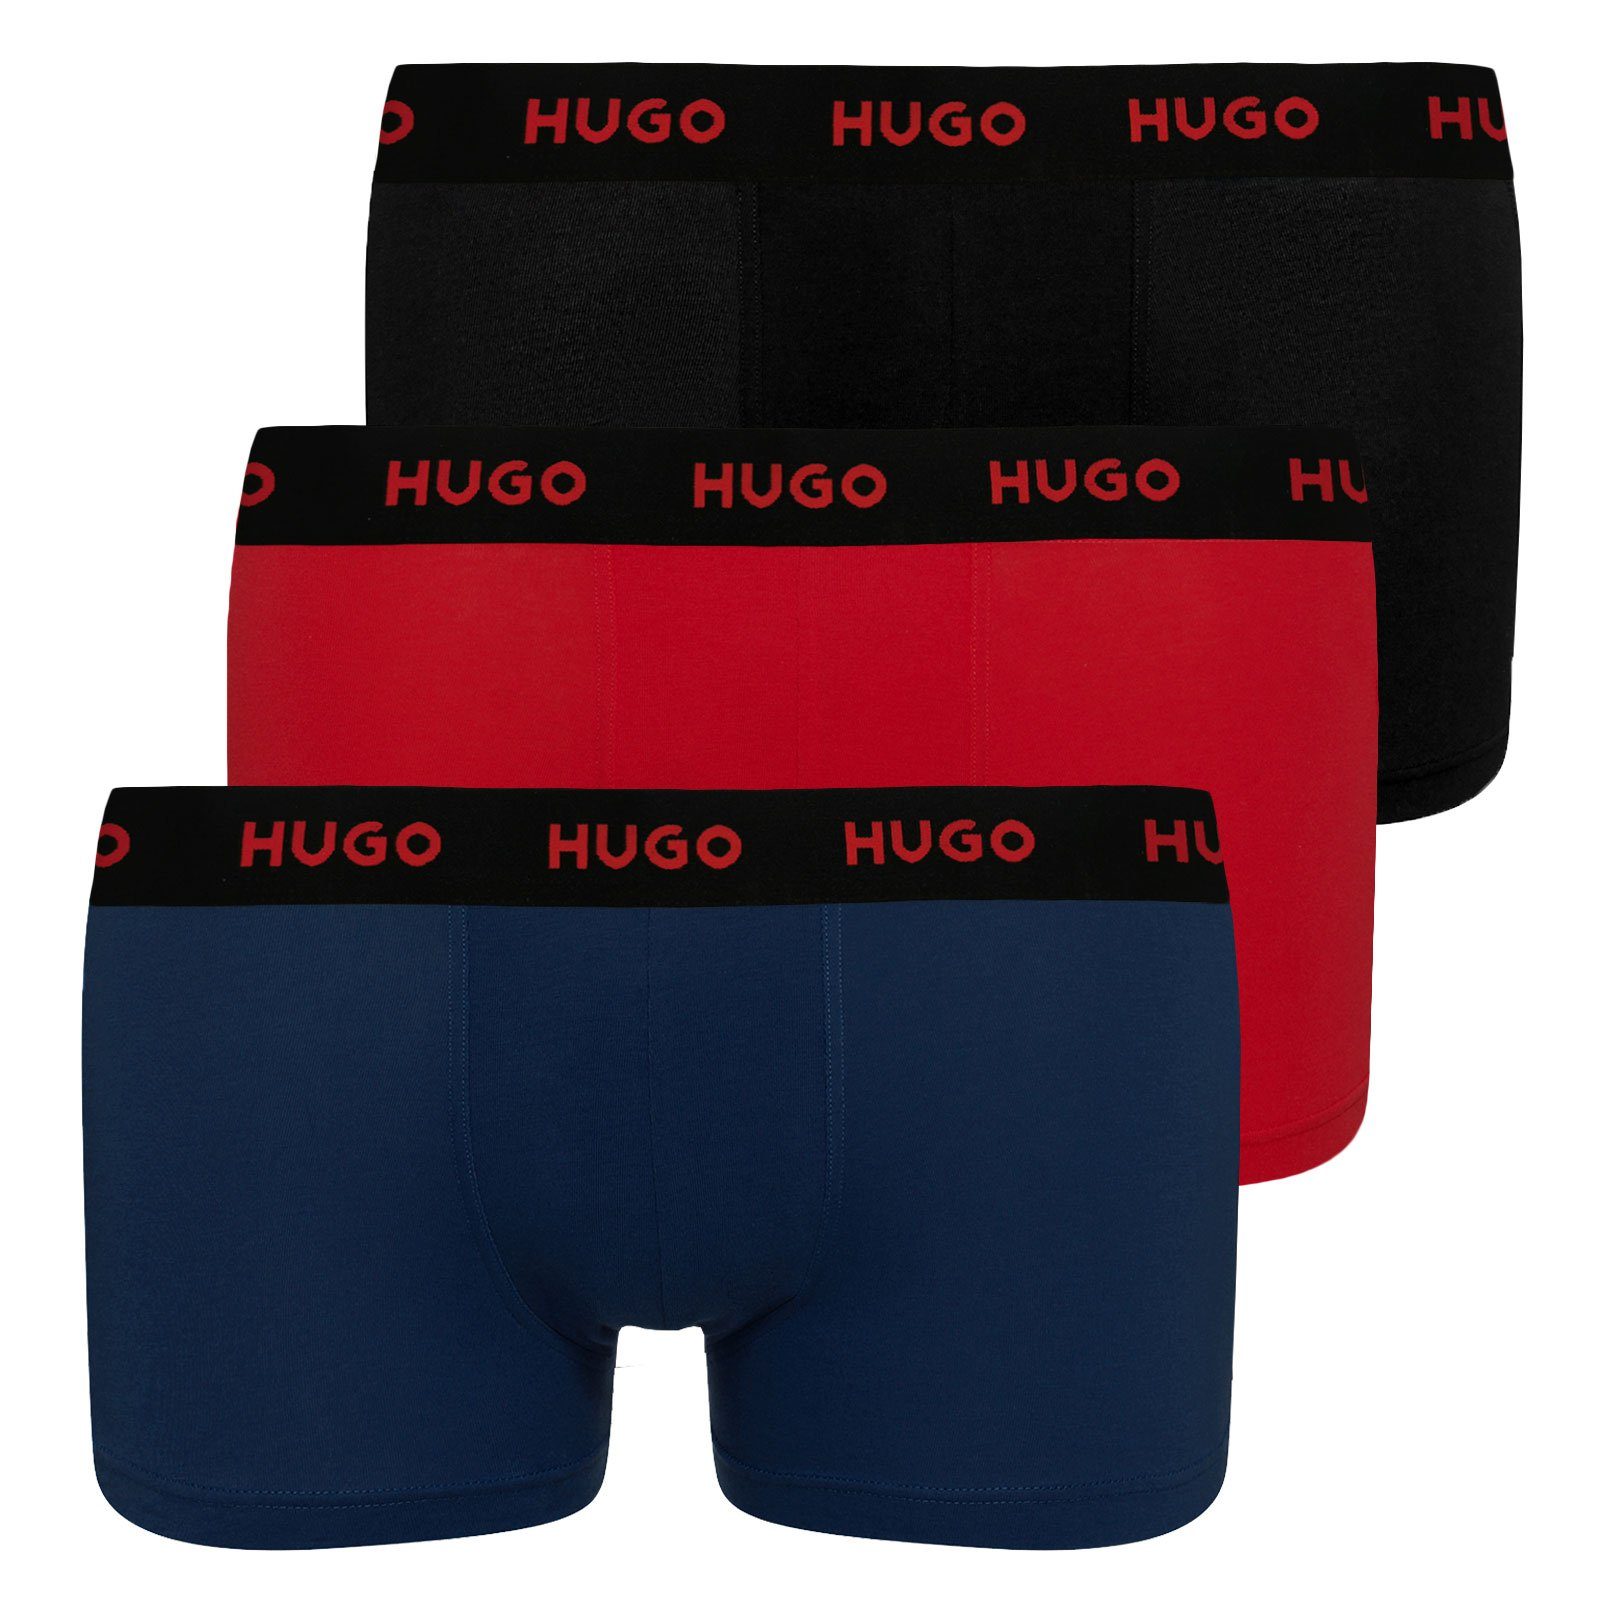 HUGO Trunk Triplet Pack (3-St., 3er Set) mit umlaufendem Markenschriftzug am Bund 982 black / dark blue / red